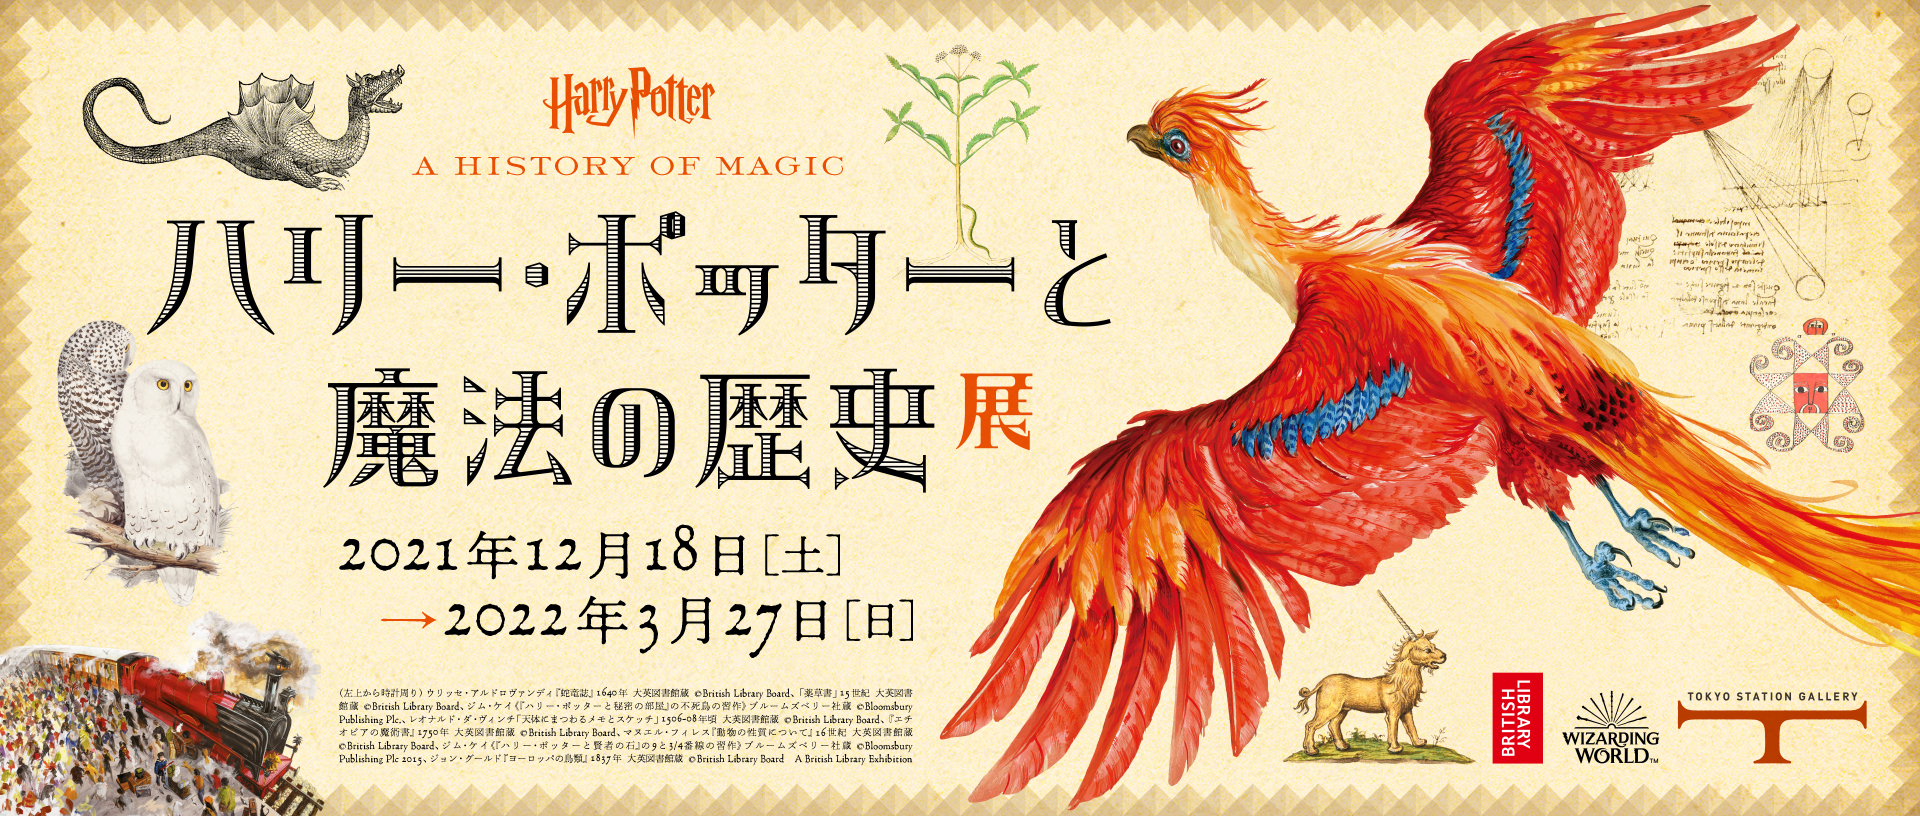 ハリー・ポッターと魔法の歴史 イメージ